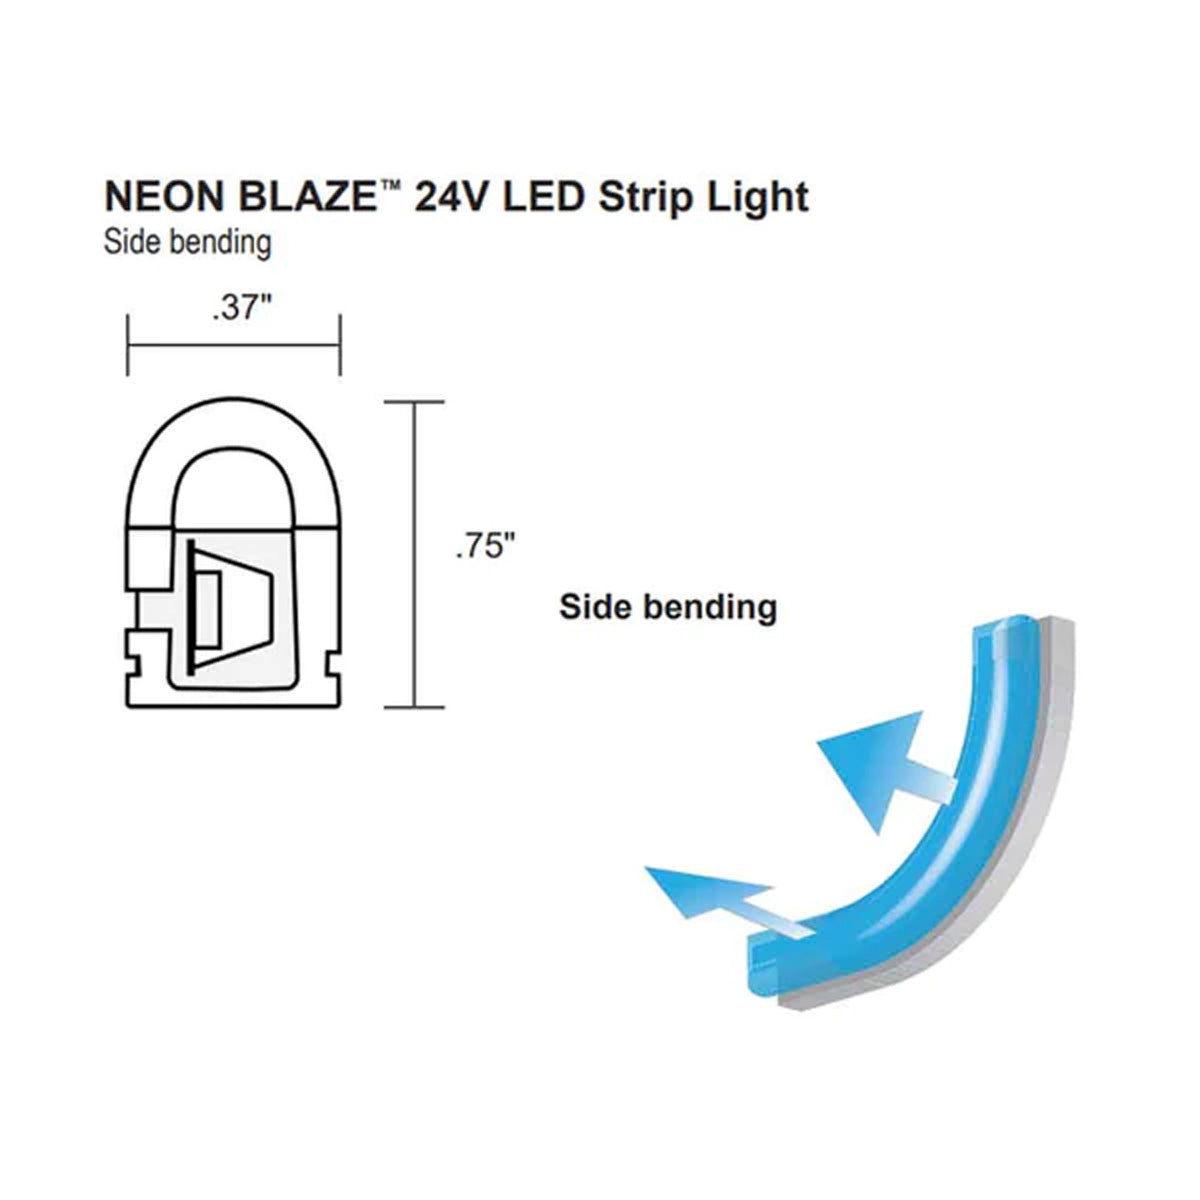 Neon BLAZE LED Neon Strip Light, 24V, Side Bending